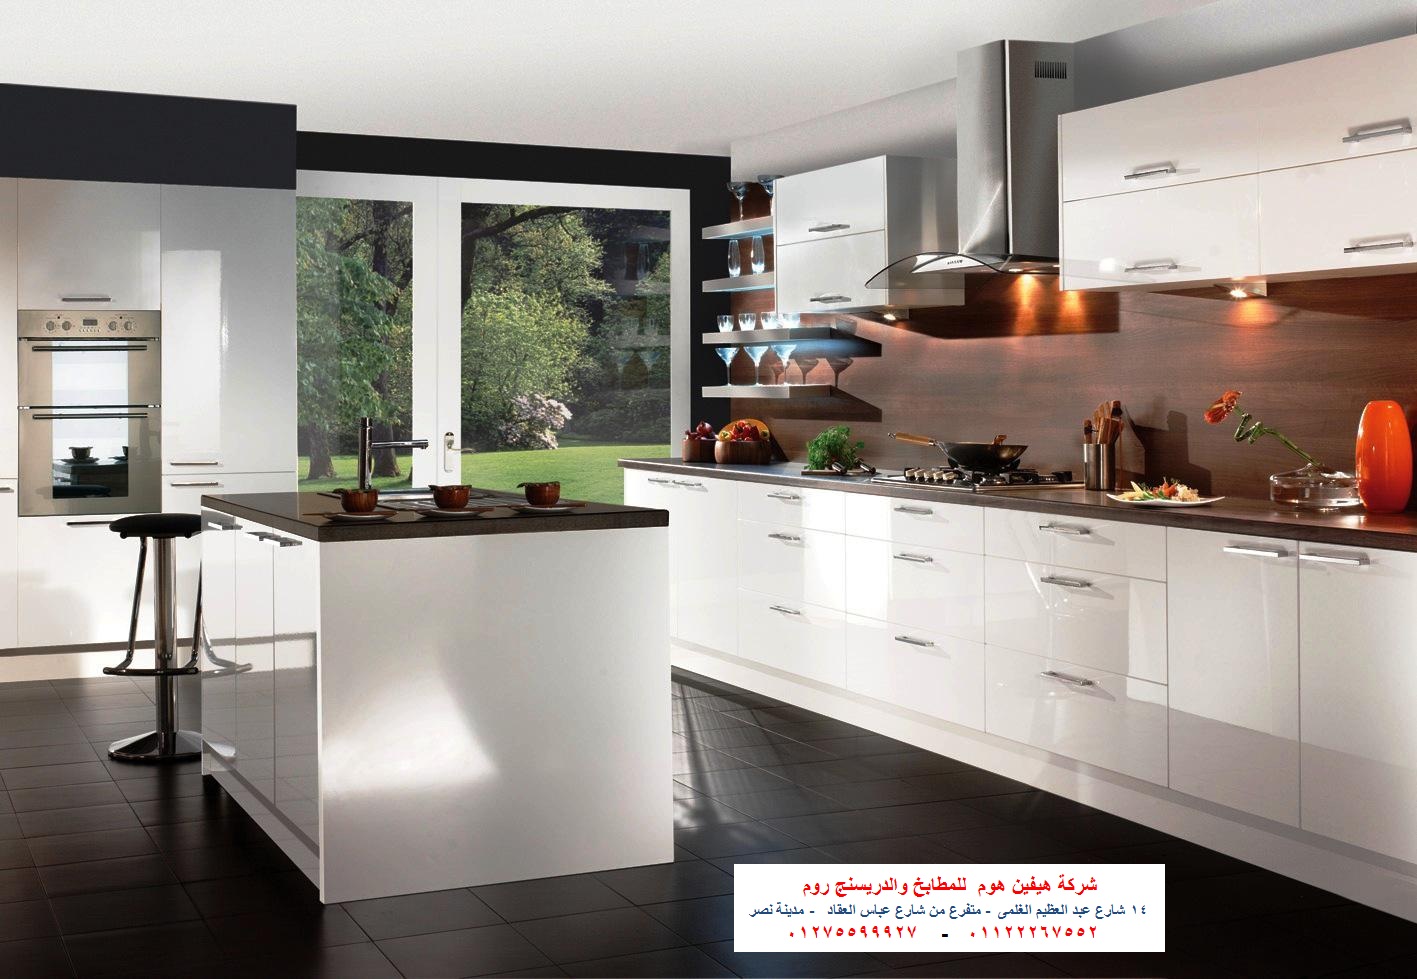 شركة مطابخ فى مصر  – ارخص سعر مطبخ    01122267552 P_80989iyn1